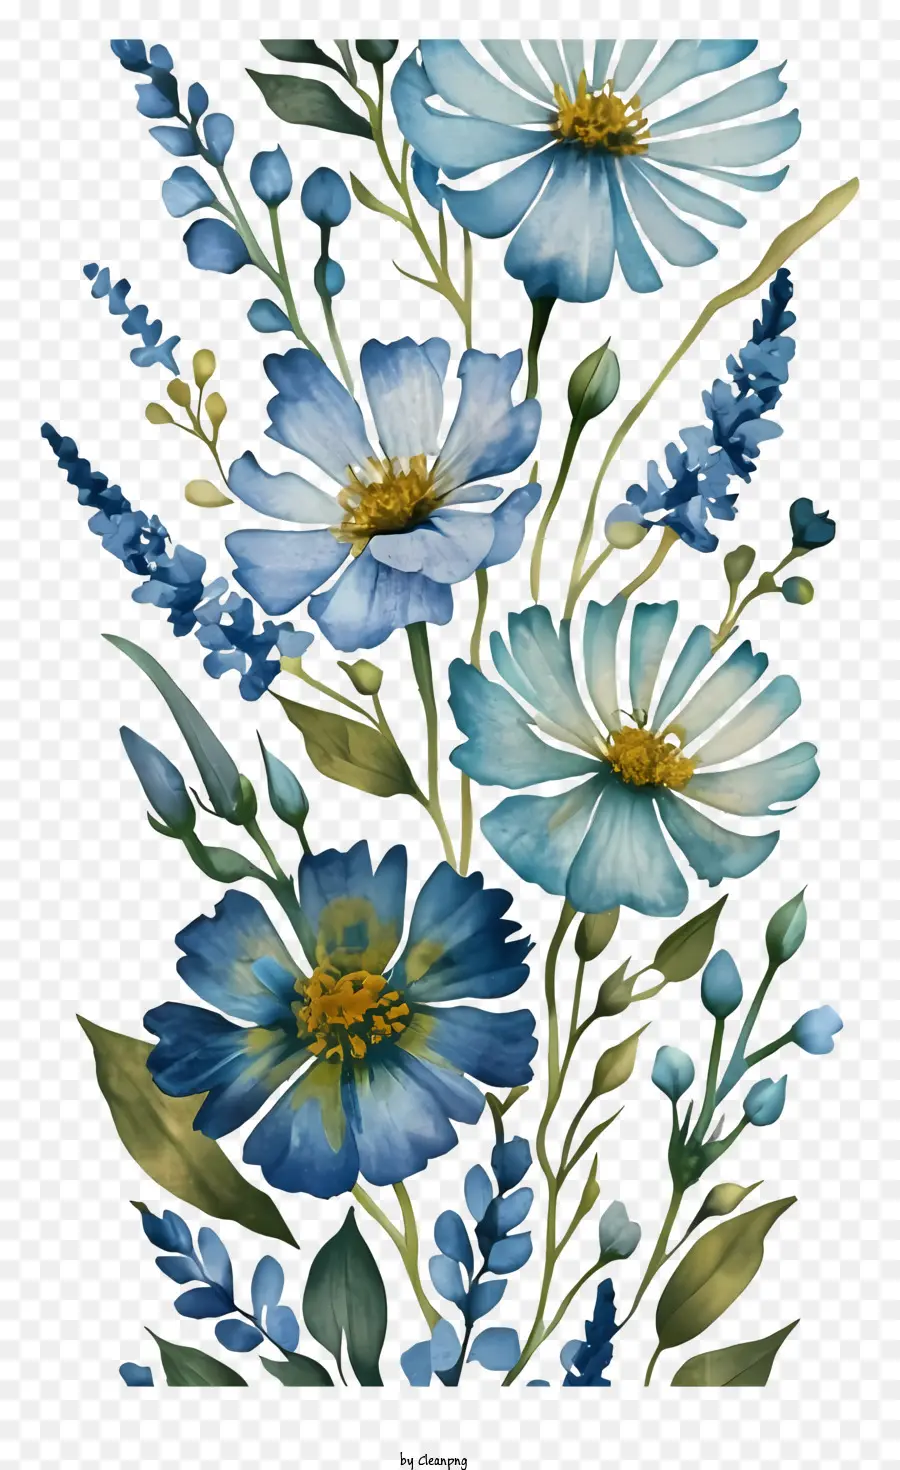 xanh nền - Những bông hoa màu xanh rực rỡ với các trung tâm màu trắng và nền màu xanh lá cây